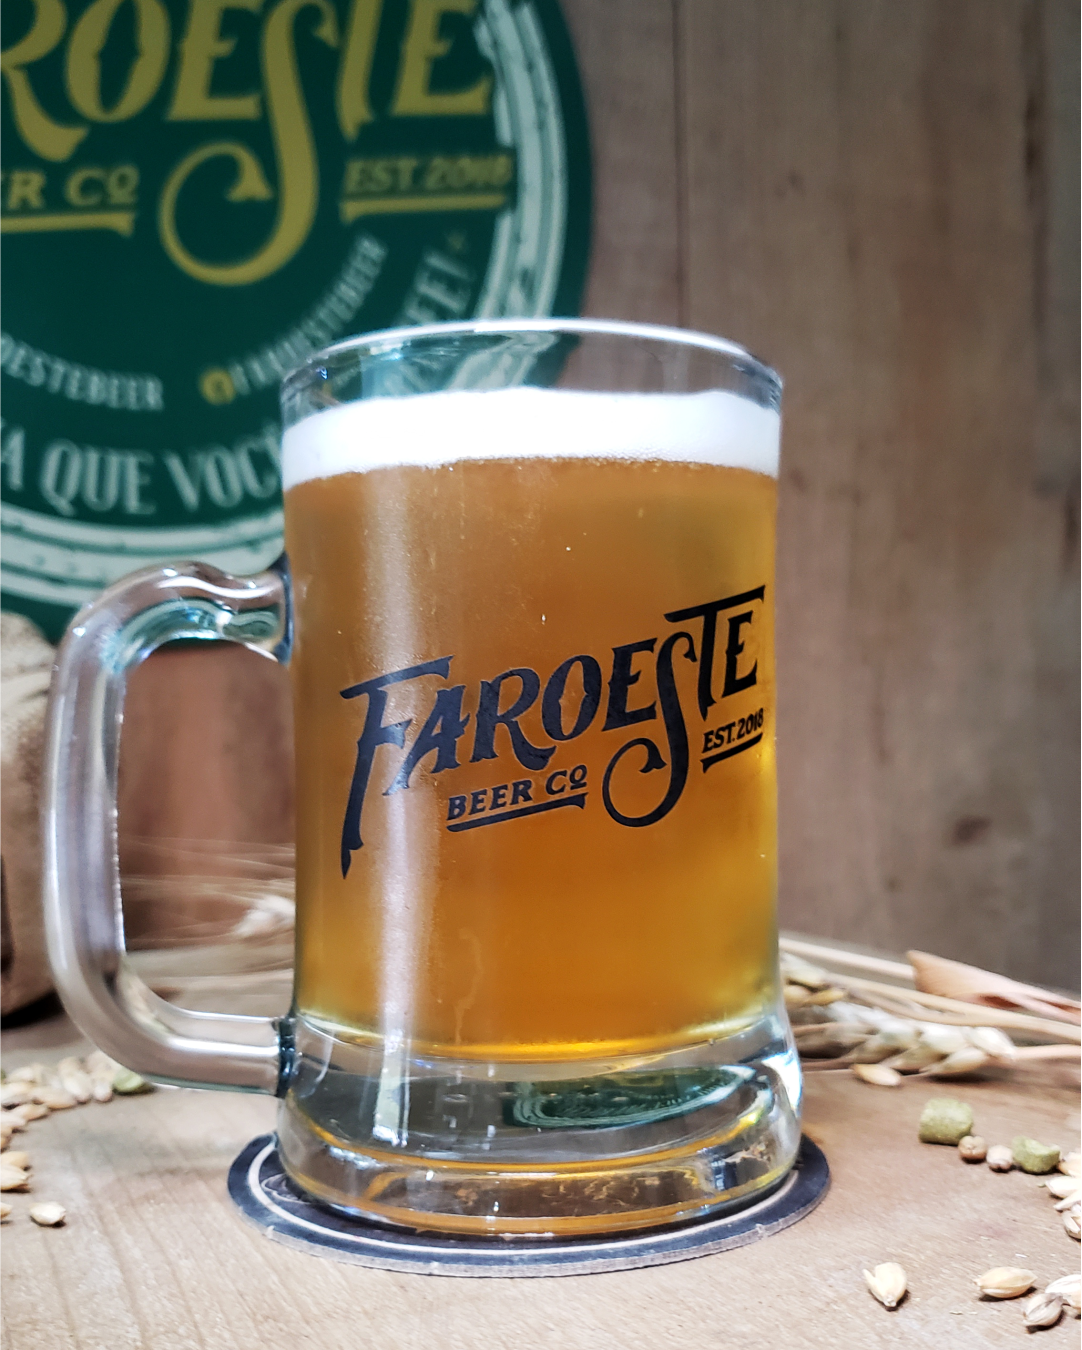 Faroeste Beer